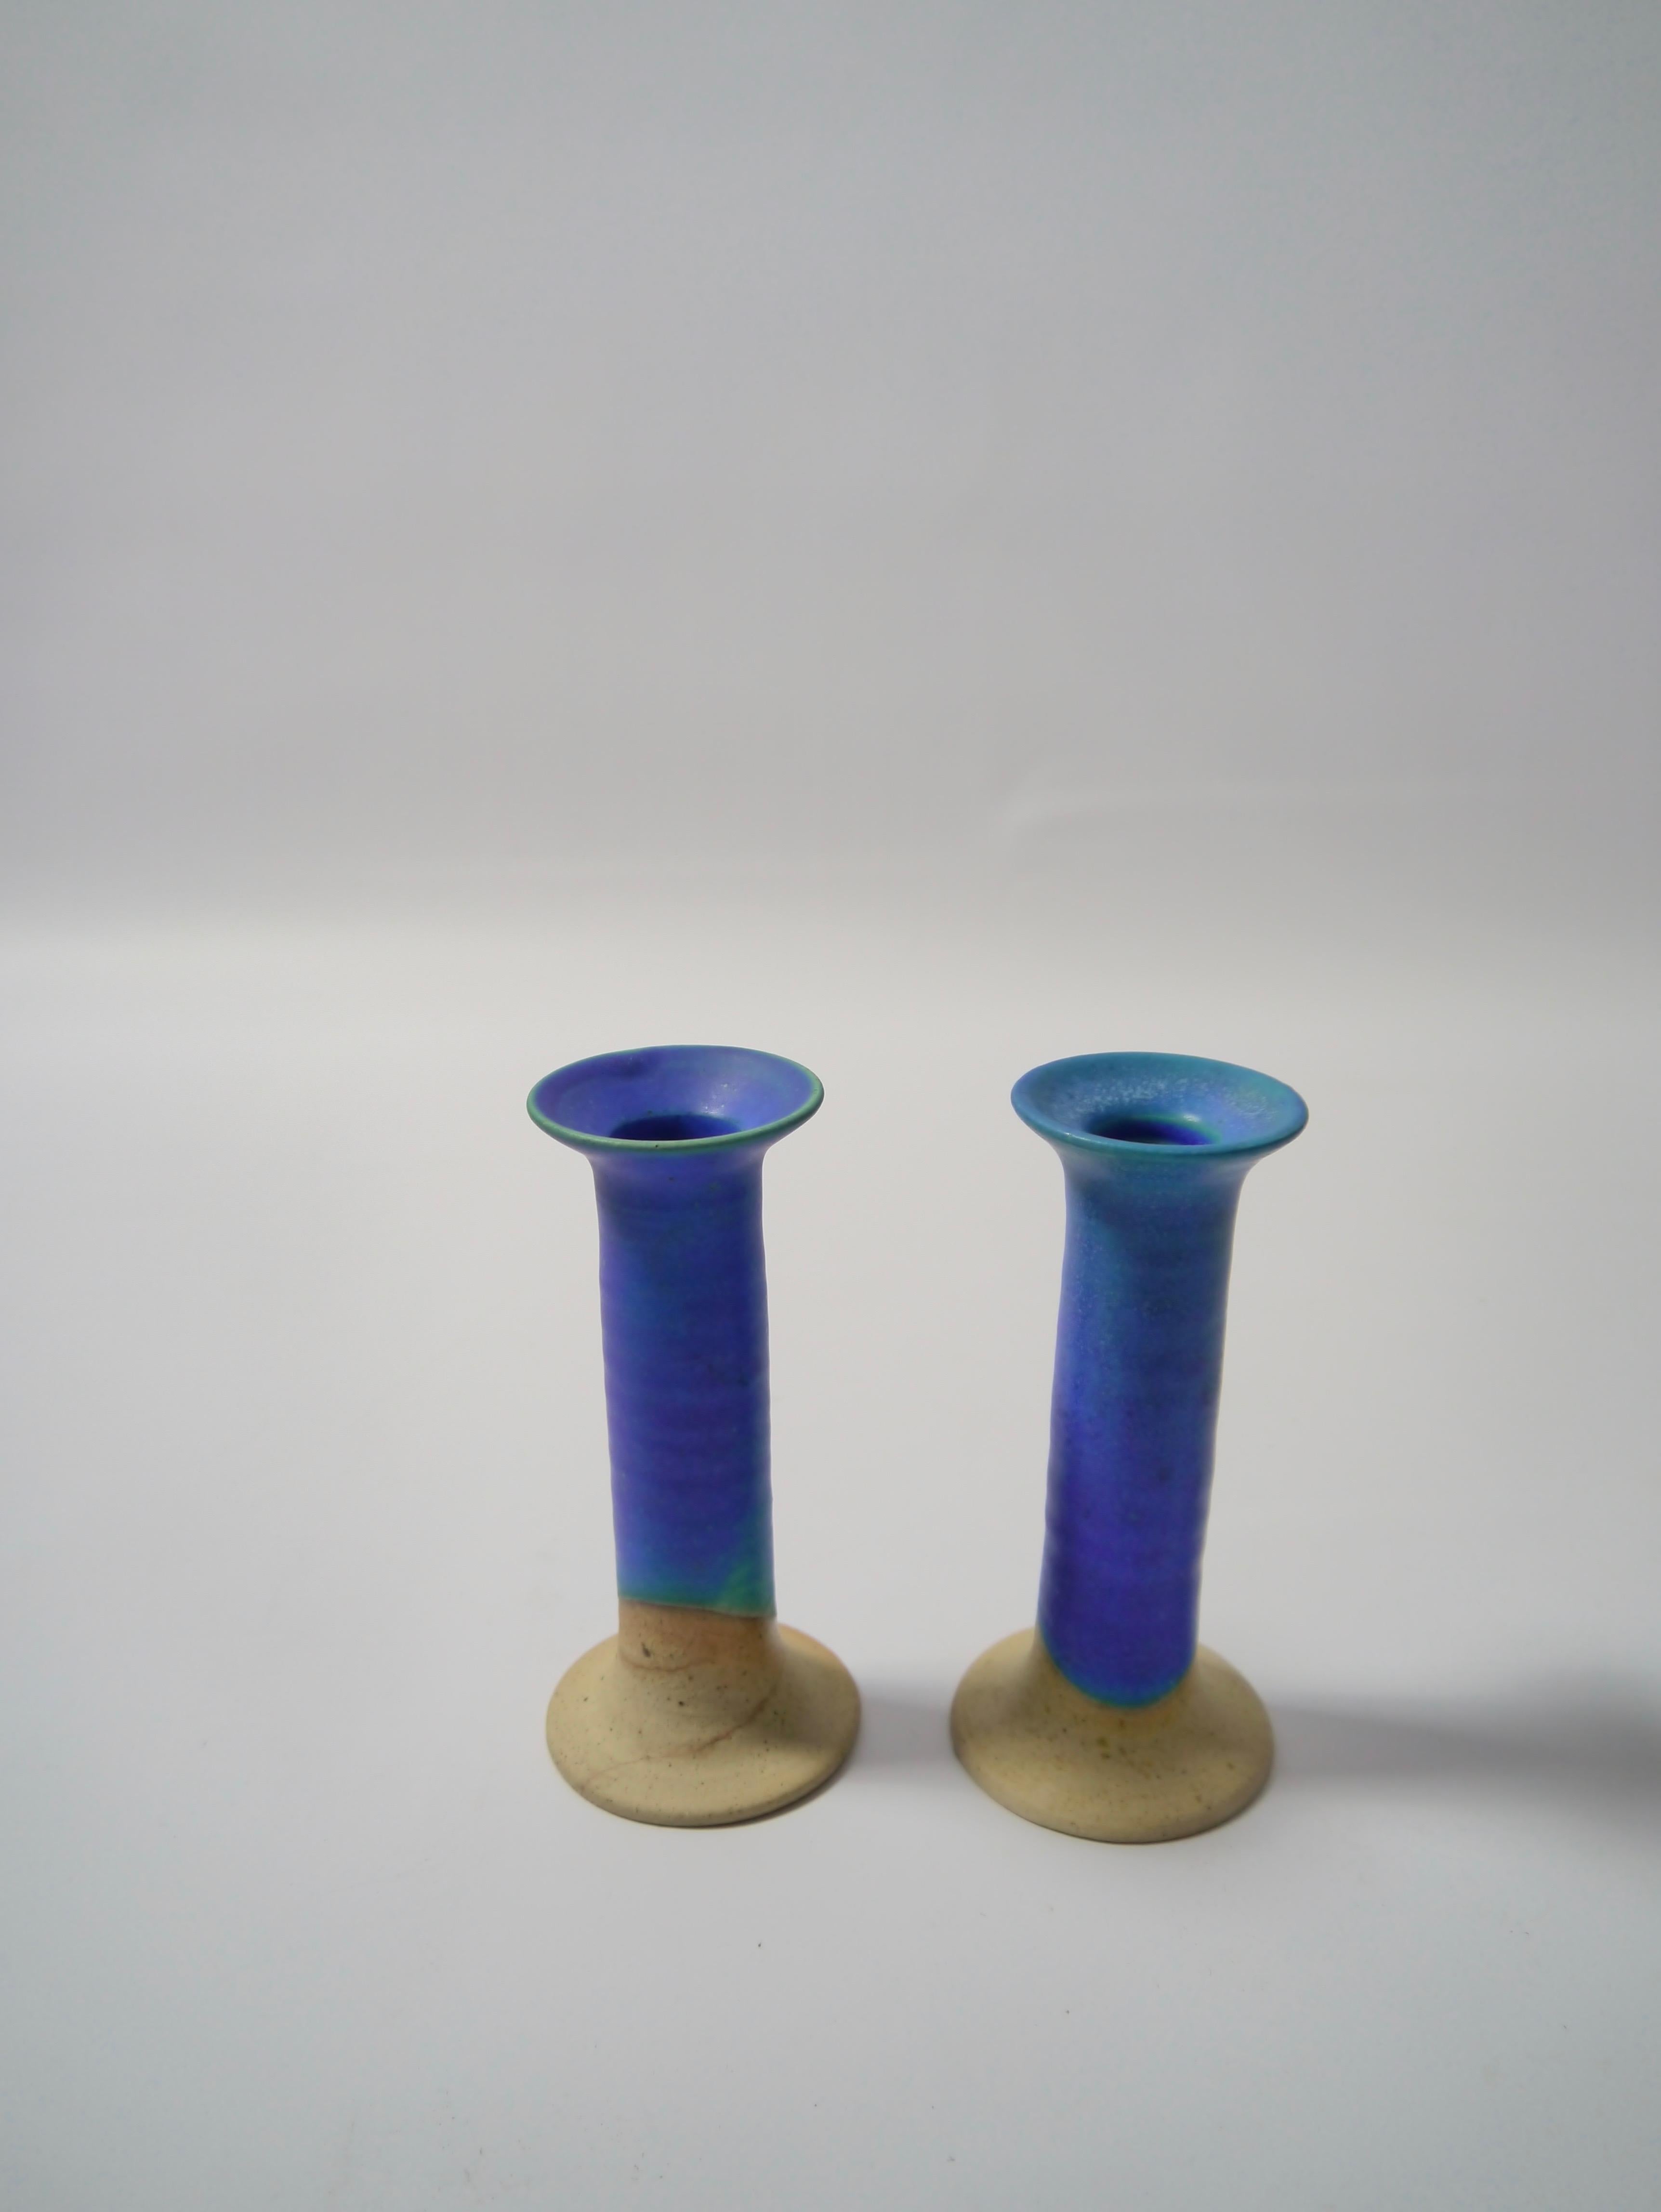 Pair of off-white or azure blue glazed ceramic candlesticks made by Inger Krebs, Denmark, 1980s.